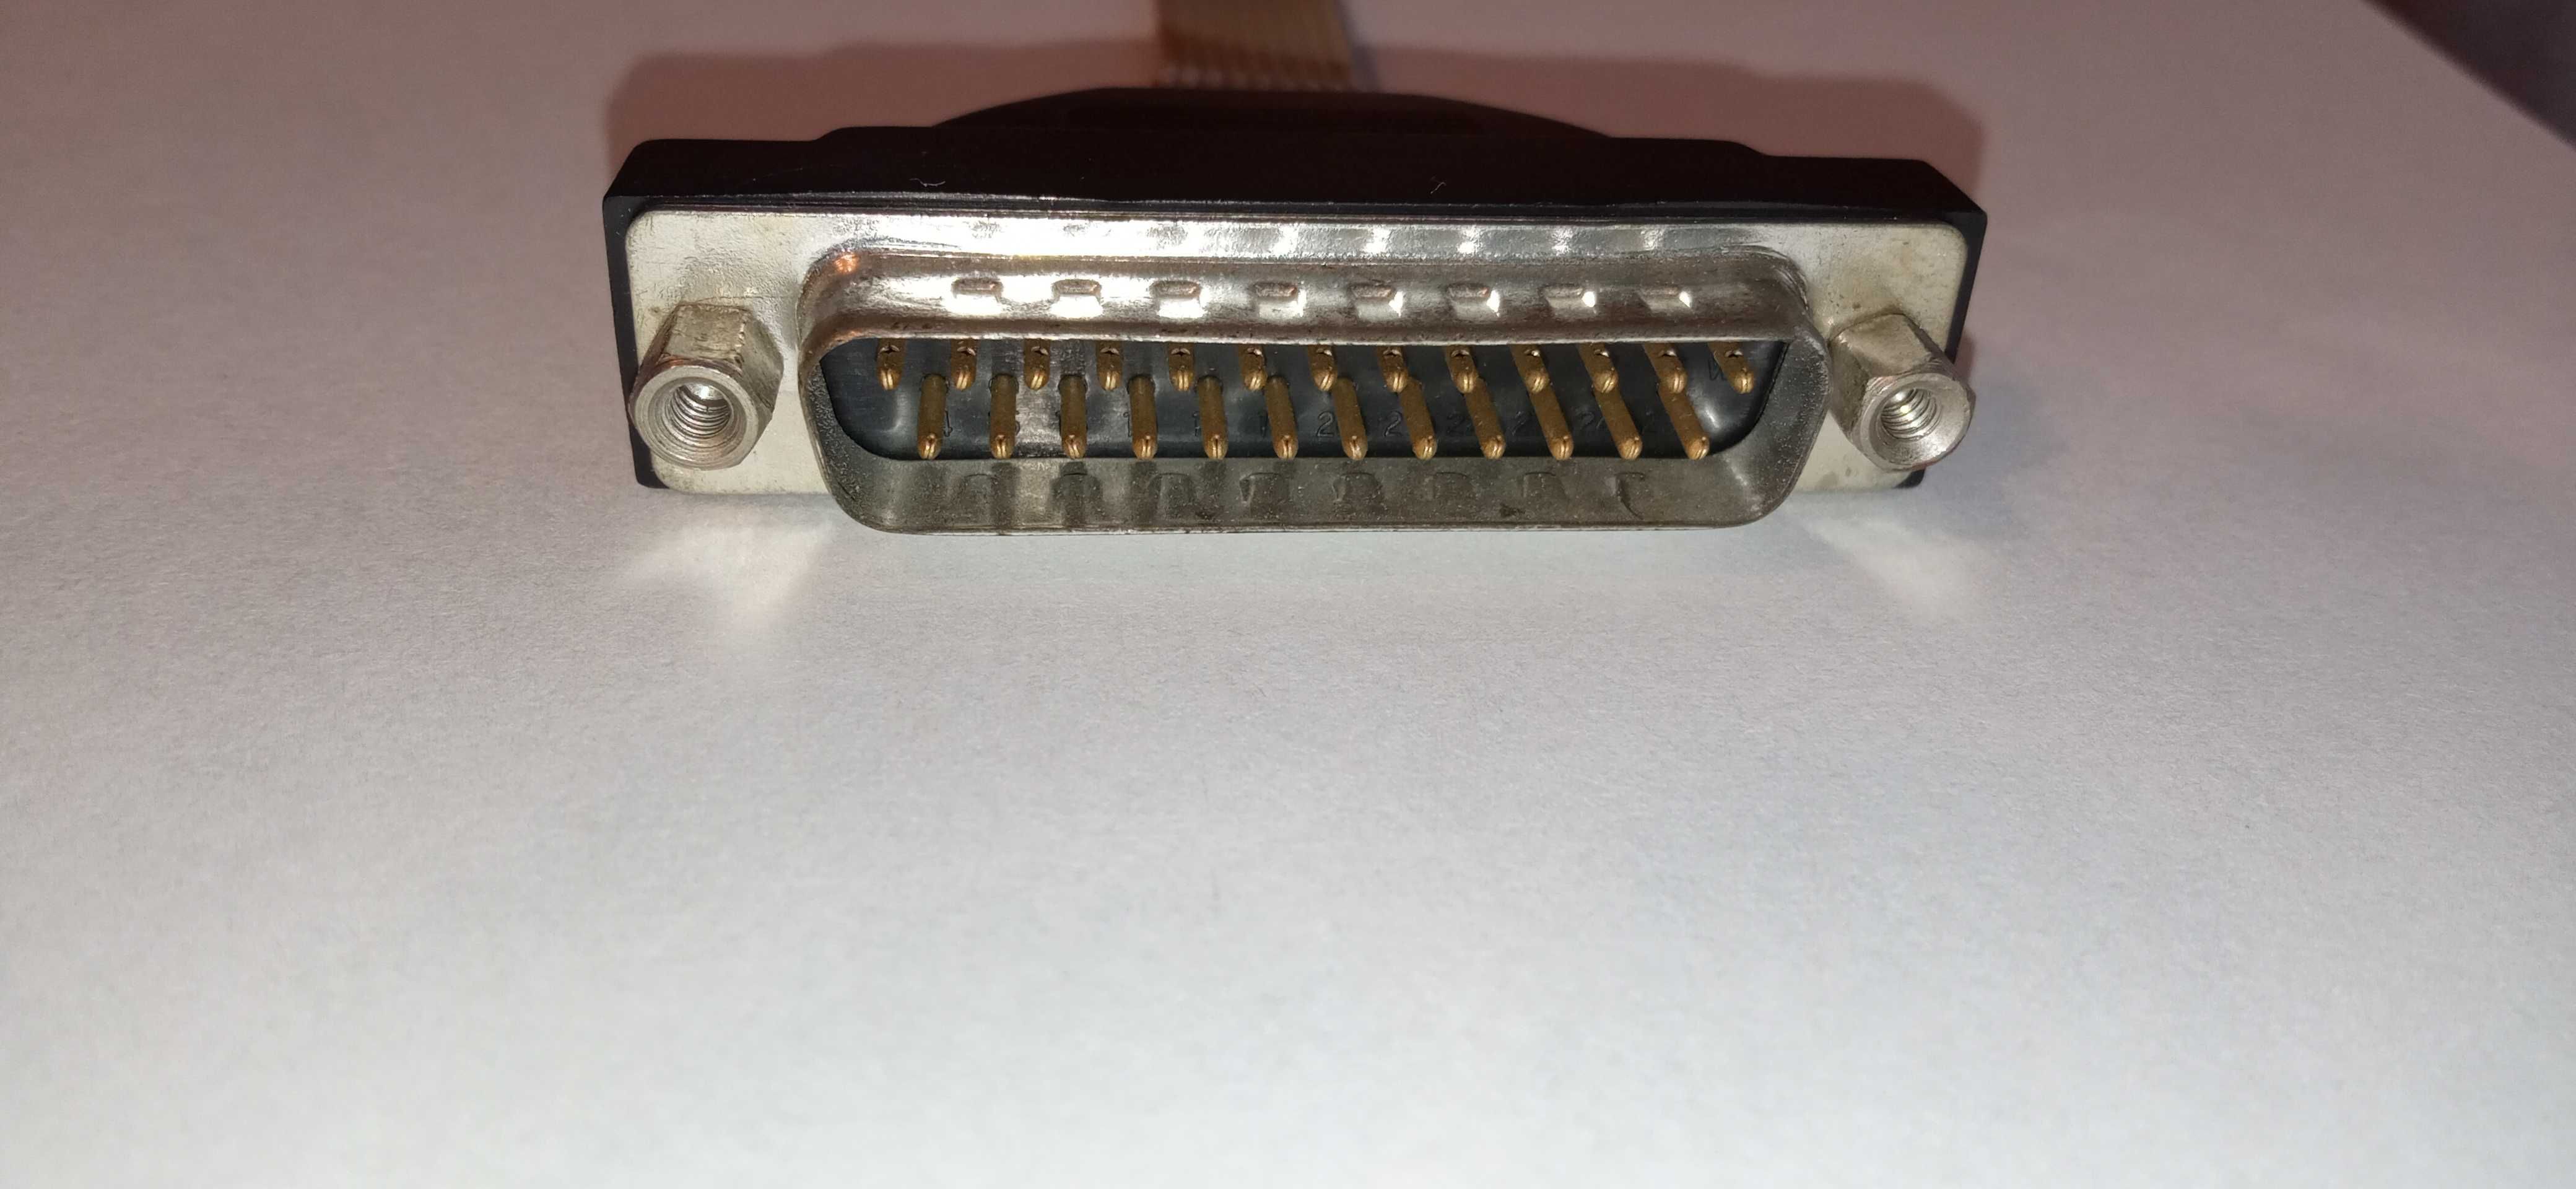 Port szeregowy RS-232, DB25 - 25 pin na kablu do płyty głównej